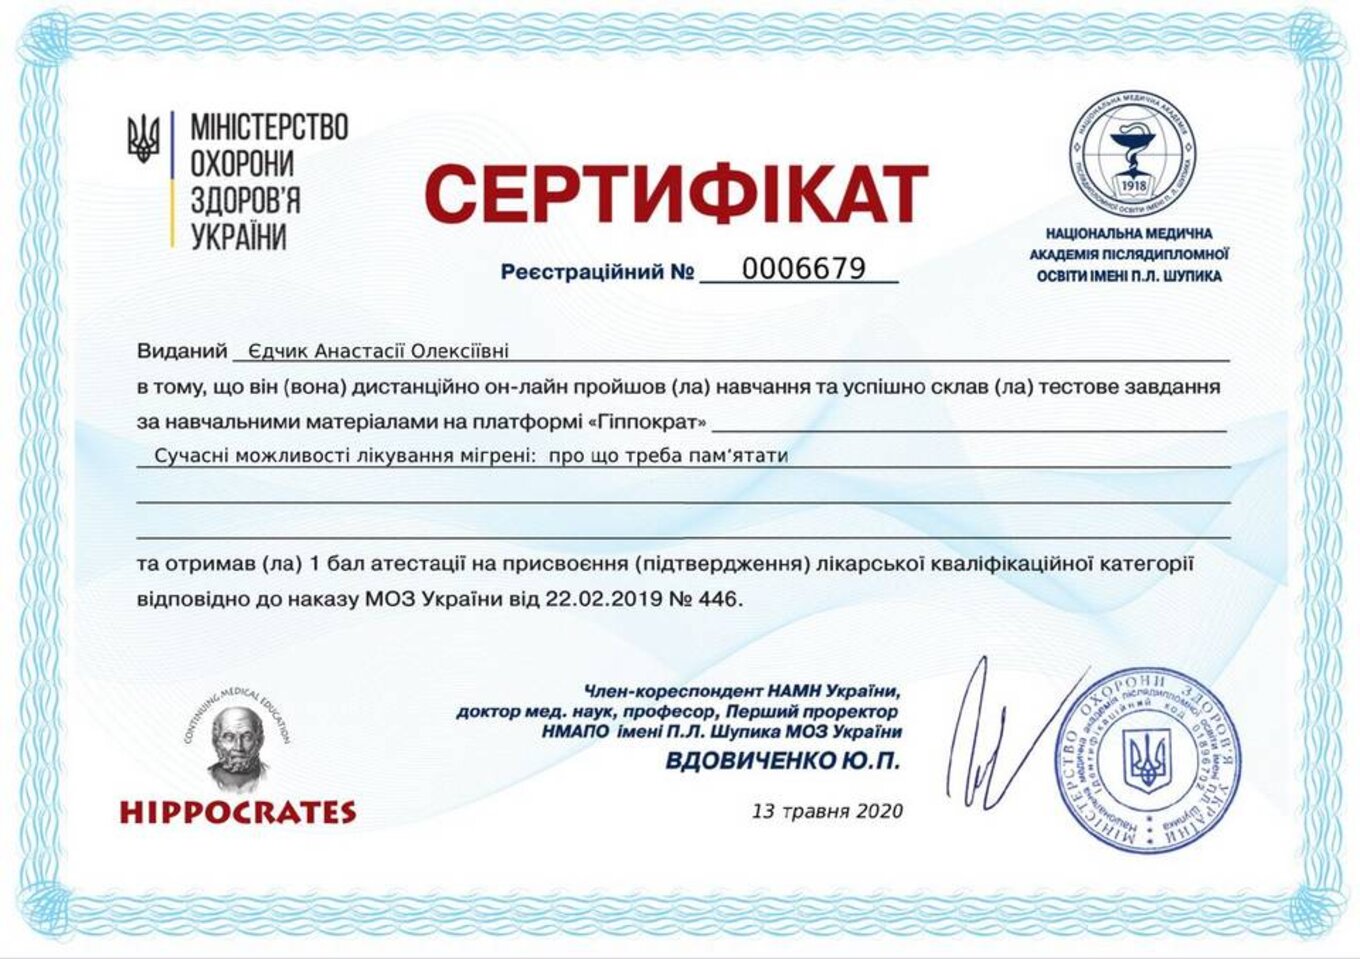 certificates/yedchik-anastasiya-oleksiyivna/erc-edchik-cert-11.jpg